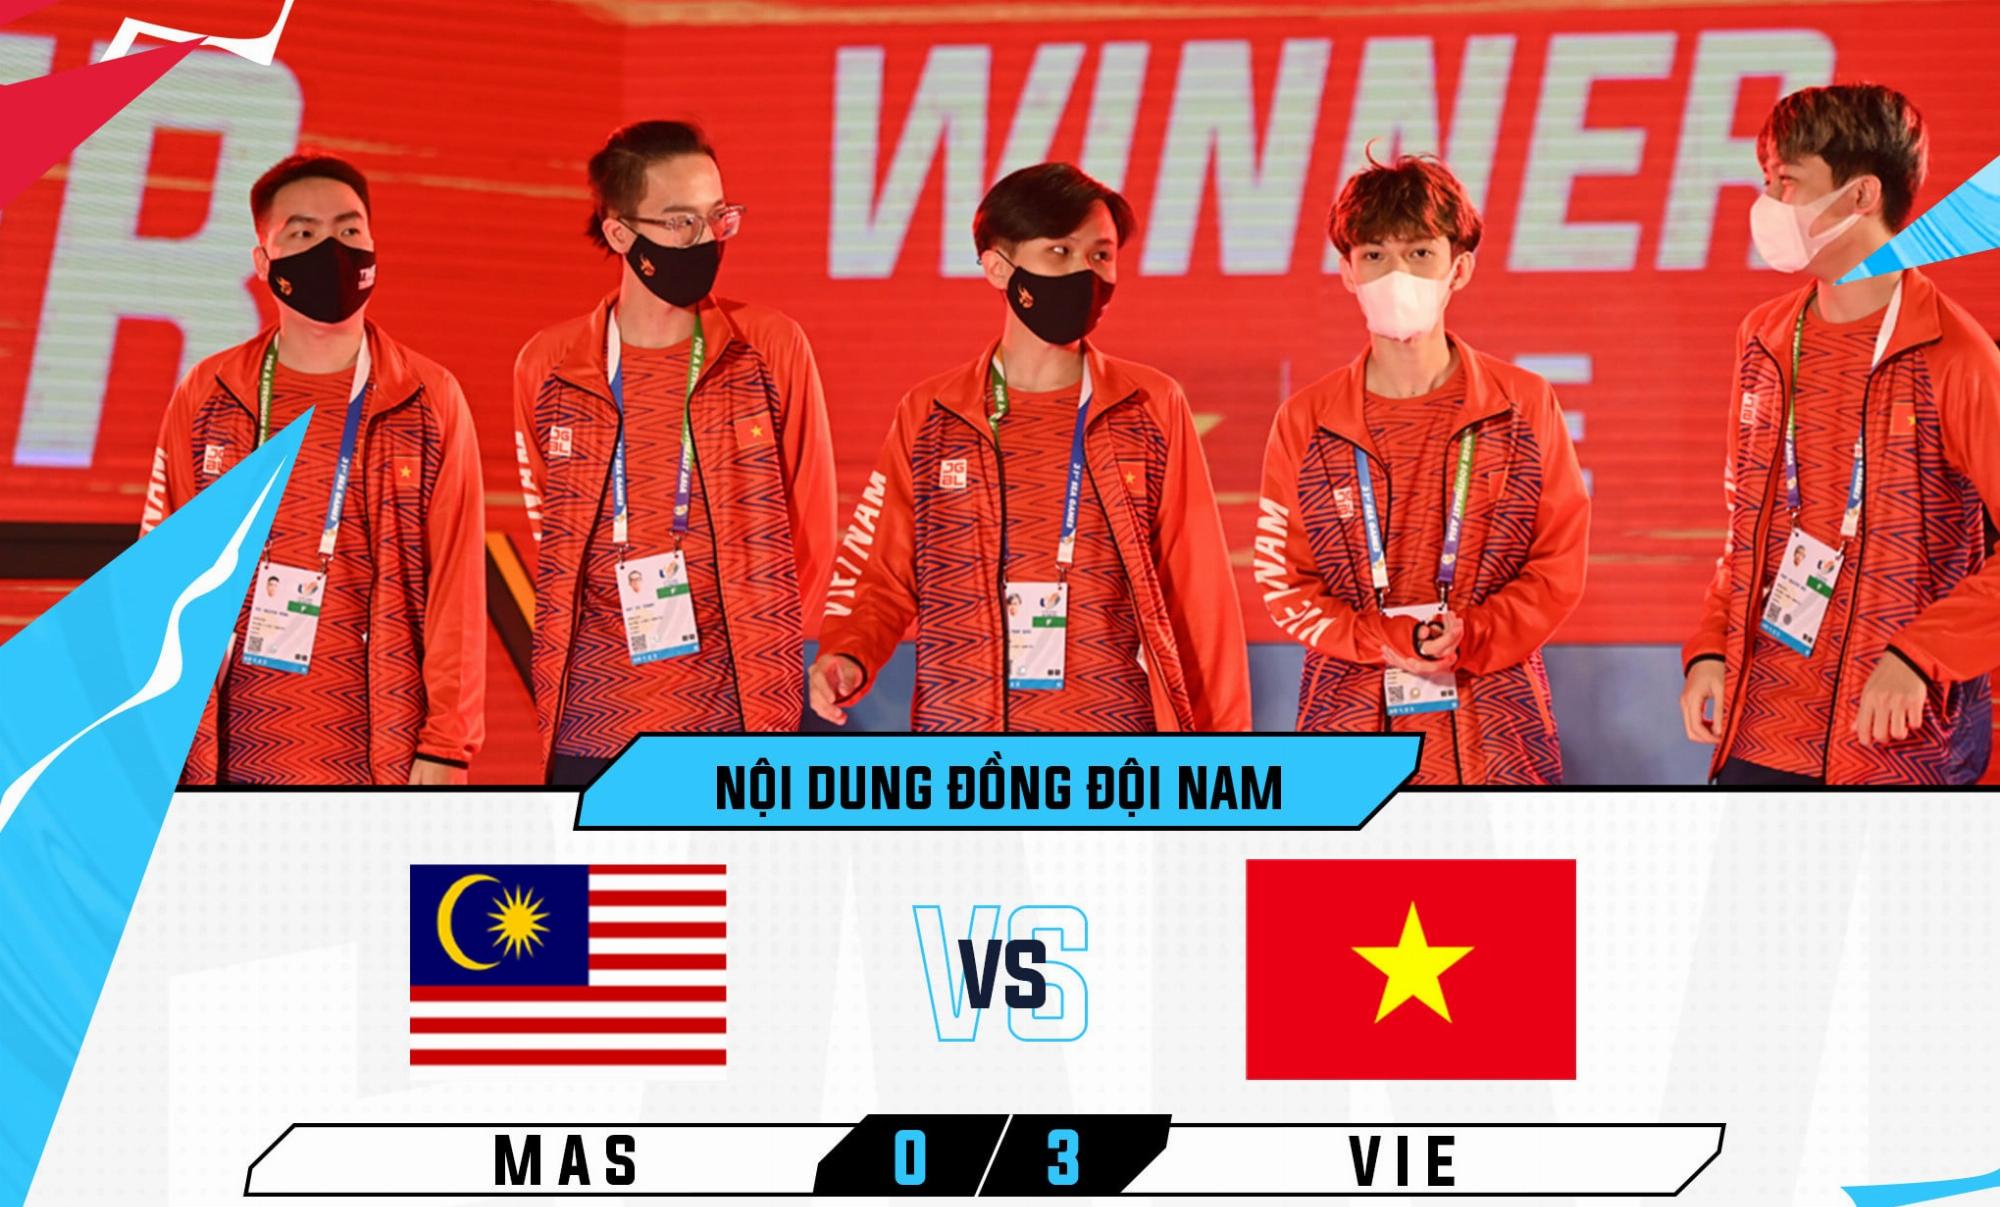 [Trực tiếp] SEA Games 31 – LMHT: Tốc Chiến đồng đội nam: Đánh bại Thái Lan 3-0, Việt Nam giành Huy Chương Vàng Esports đầu tiên